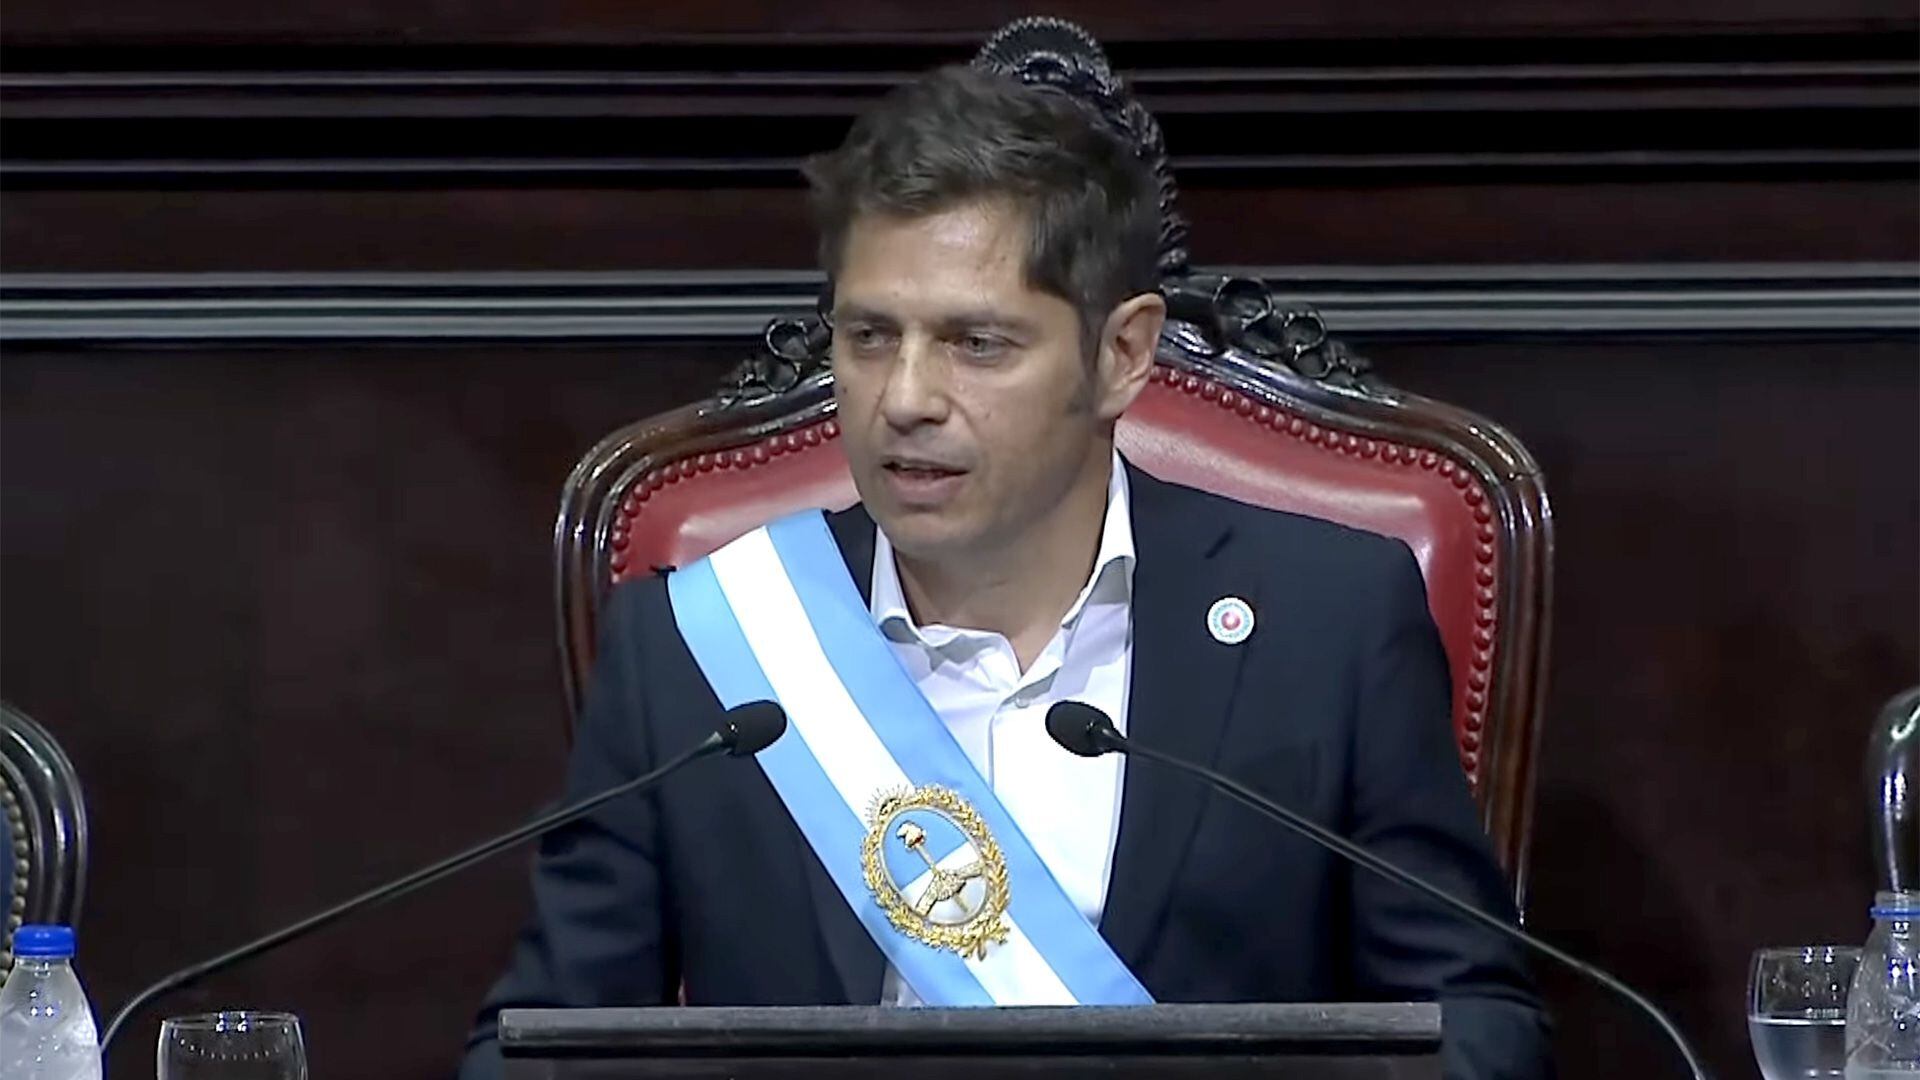 Jura Axel Kicillof asume segundo mandato provincia de Buenos Aires